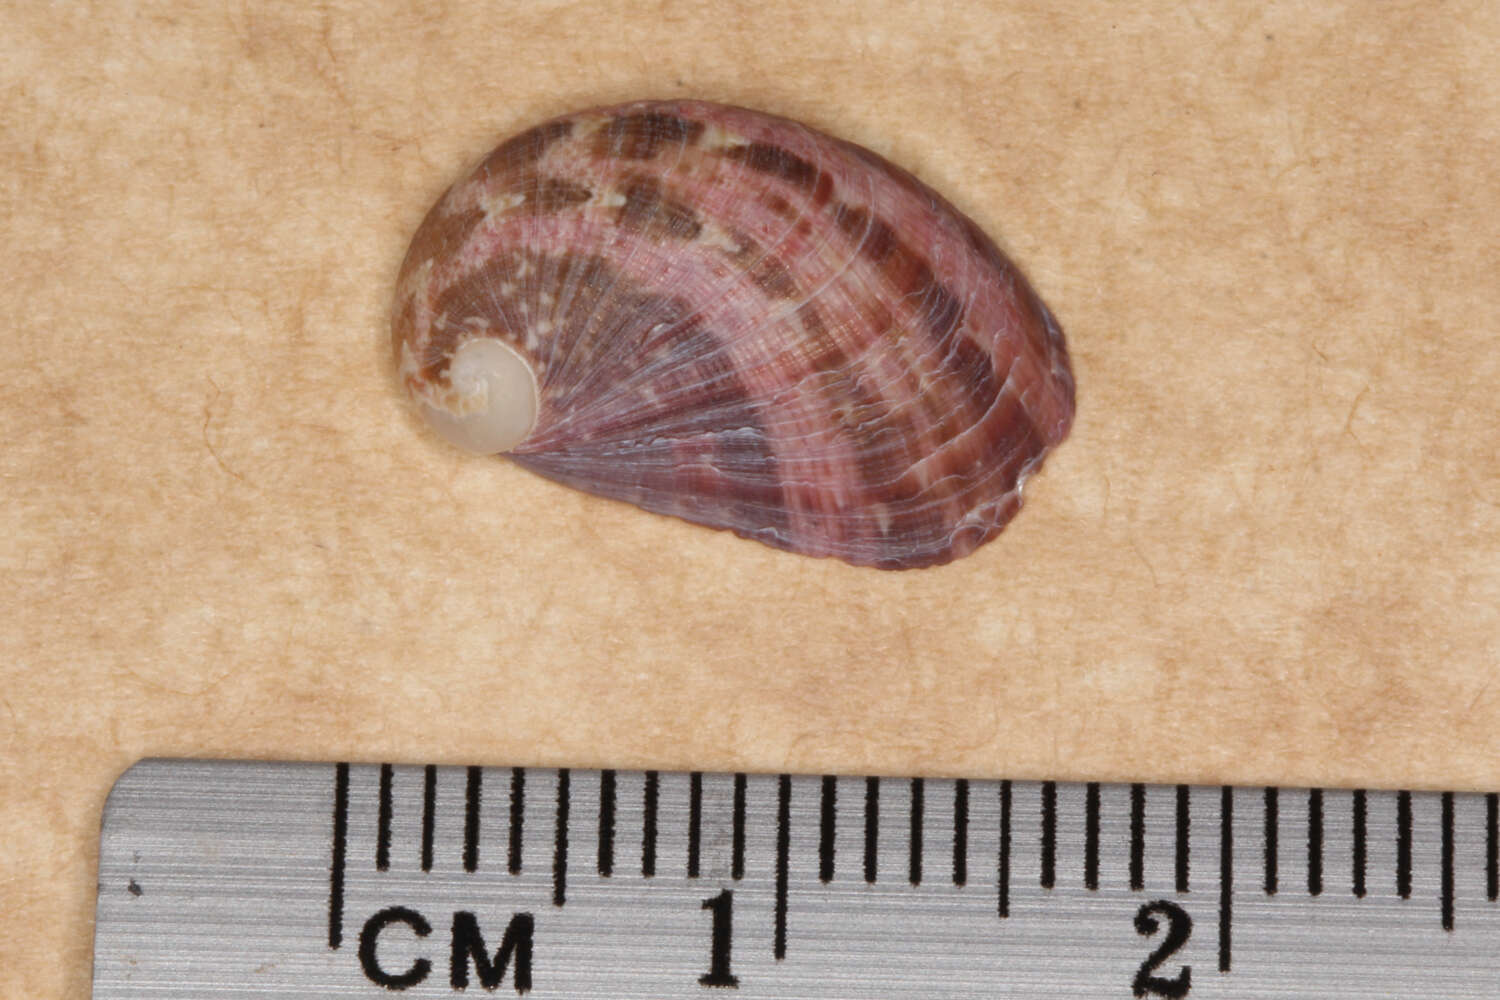 Image of Stomatella impertusa (Burrow 1815)